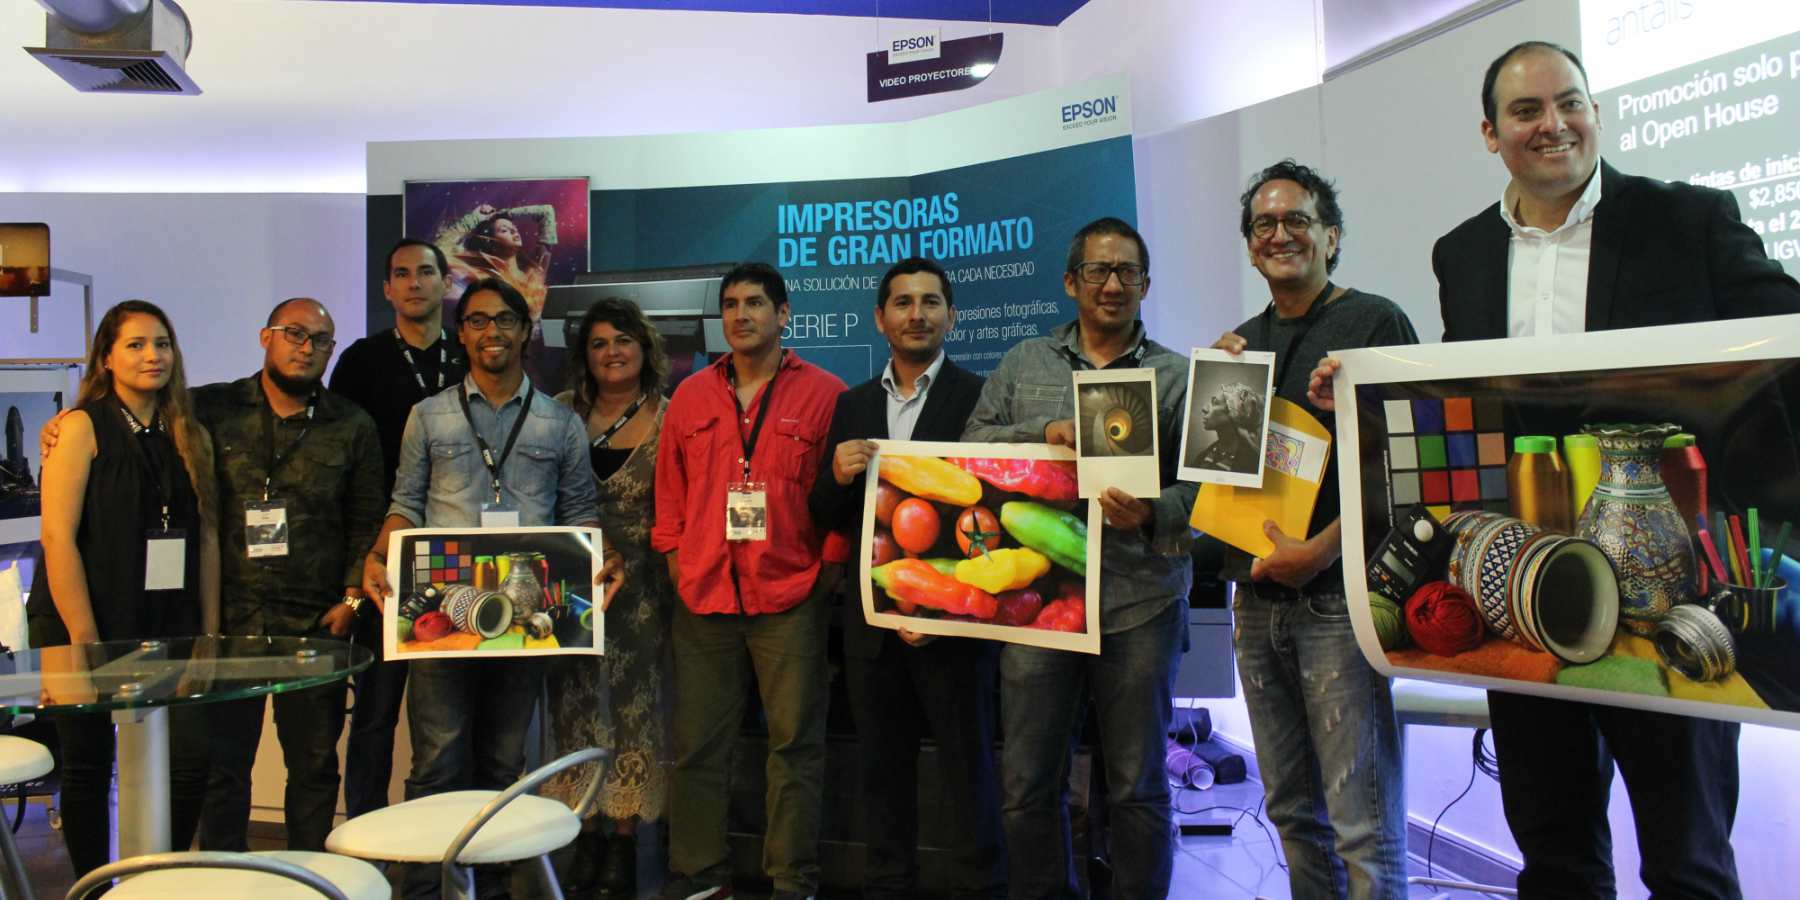 Epson Perú y Antalis presentaron las Impresoras de Gran Formato para el sector fotográfico y publicitario